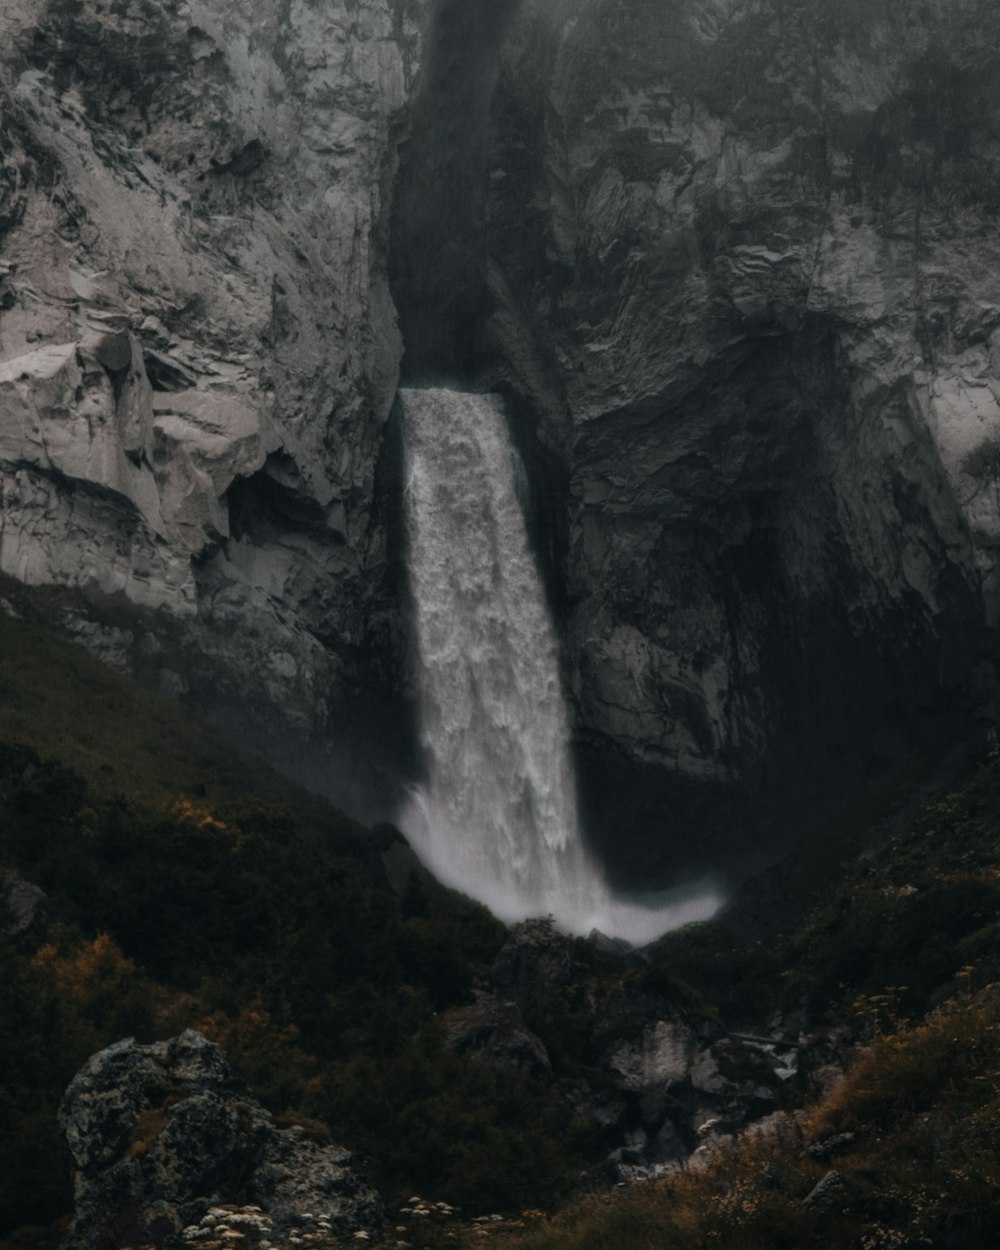 cachoeiras entre montanhas rochosas cinzentas durante o dia